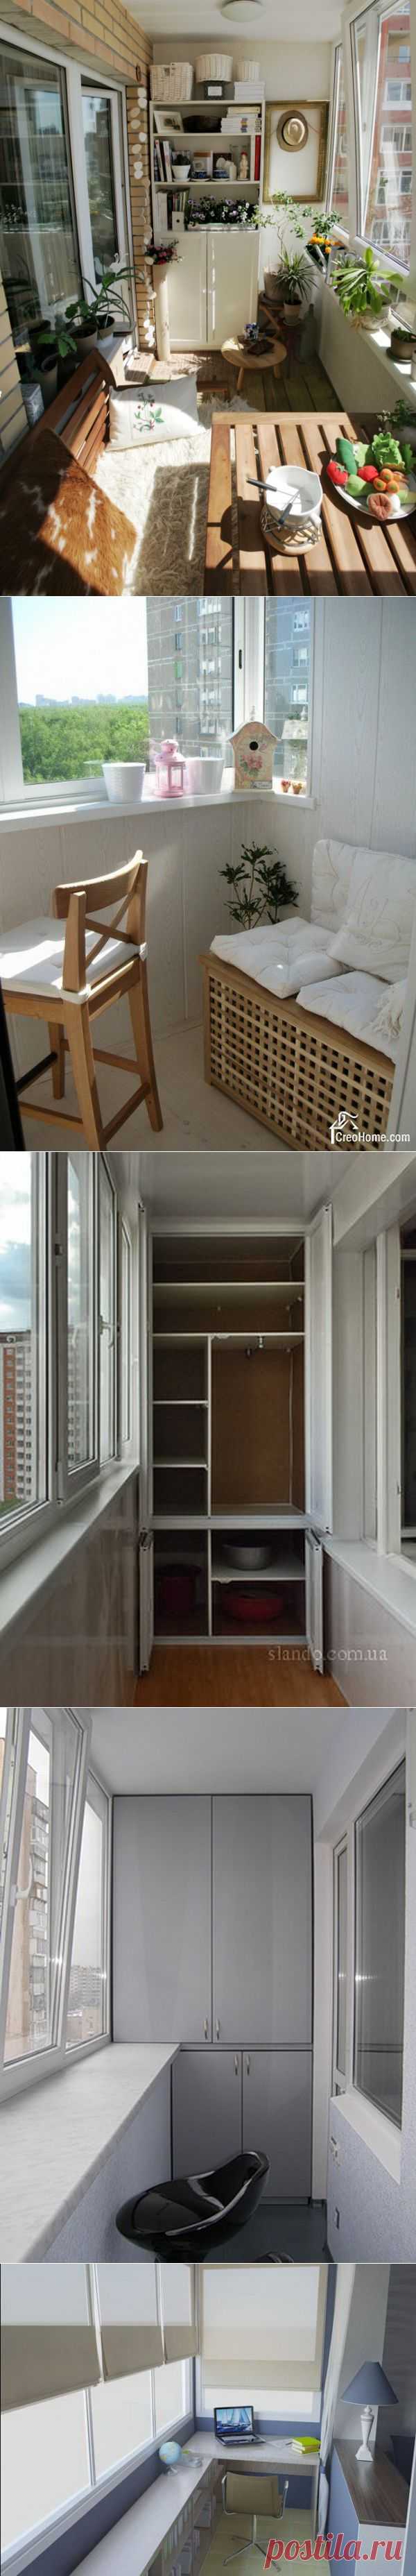 Шкафы на балконе — 30 примеров в интерьере